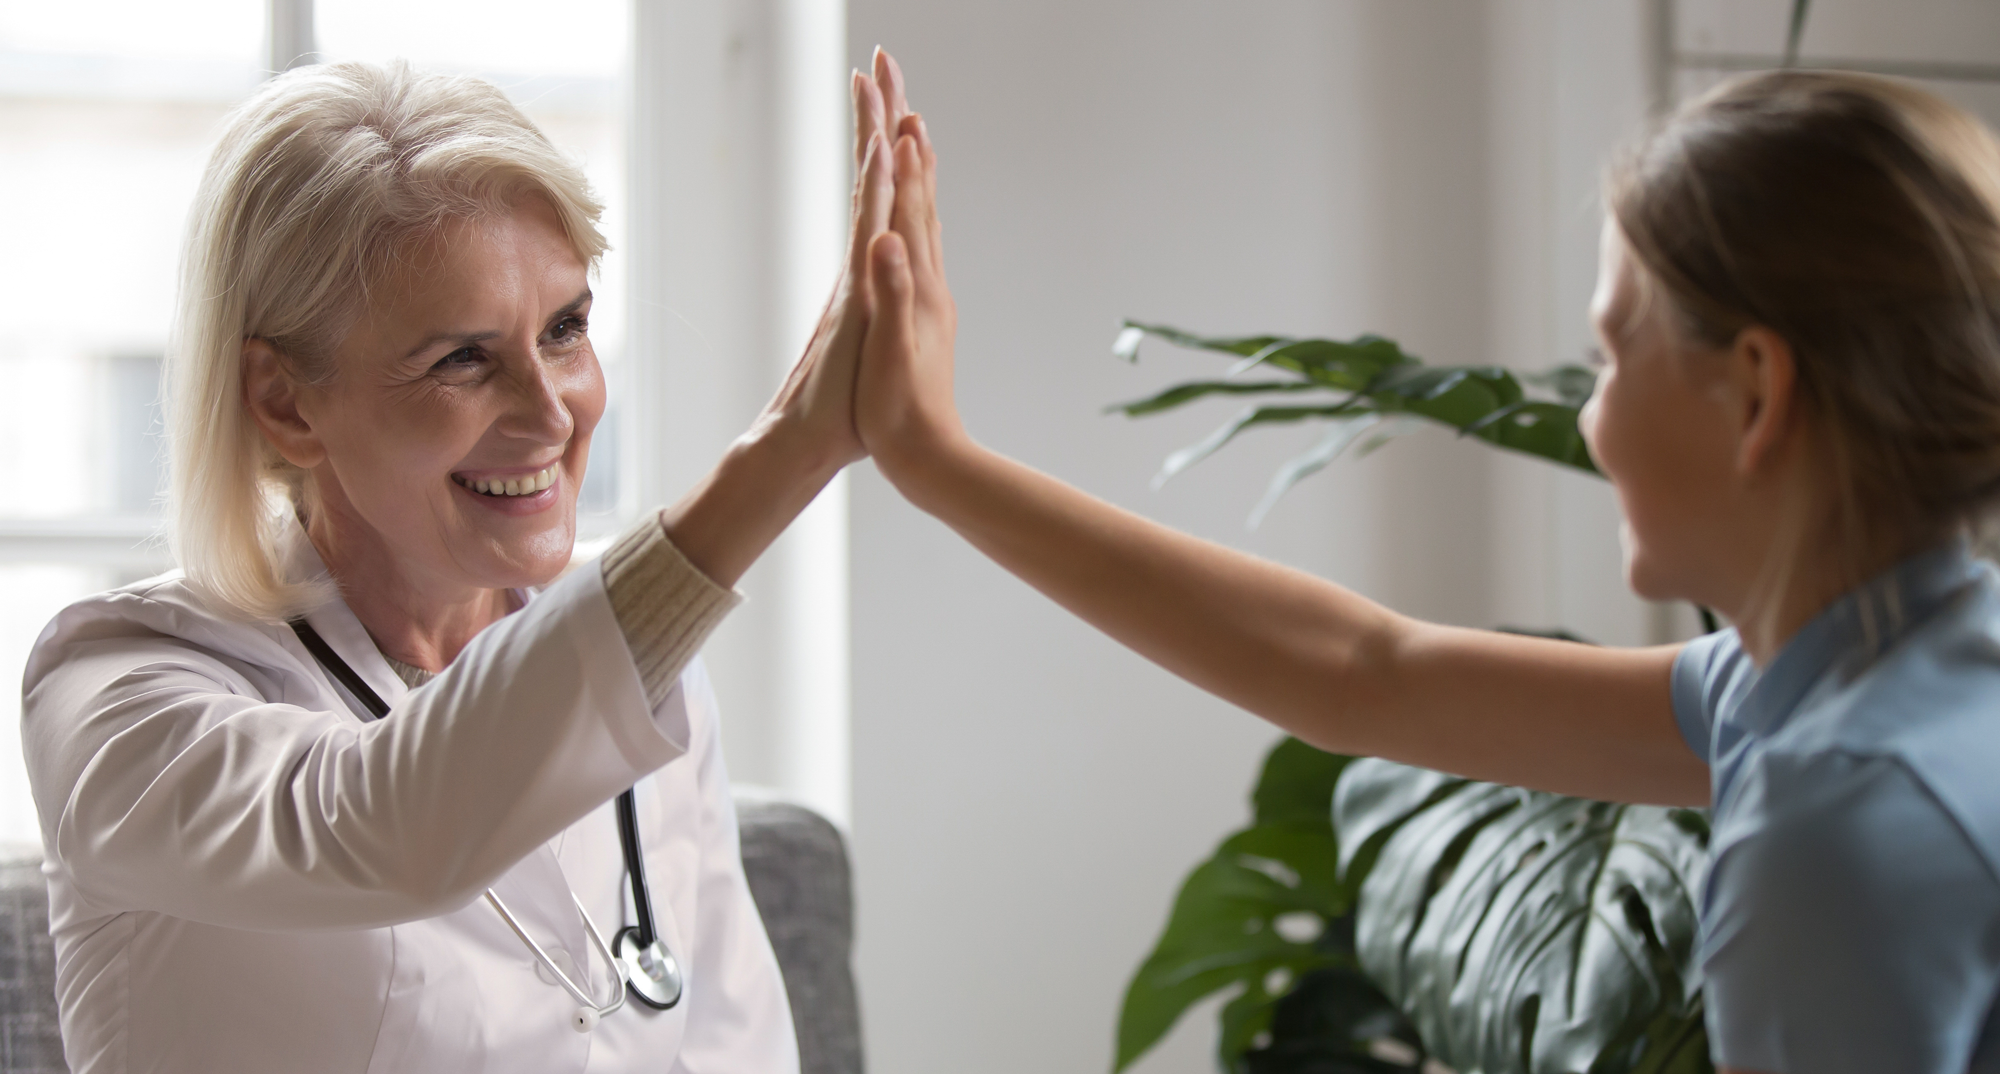 Lege og pasient gjør high-five etter vellykket saksgang